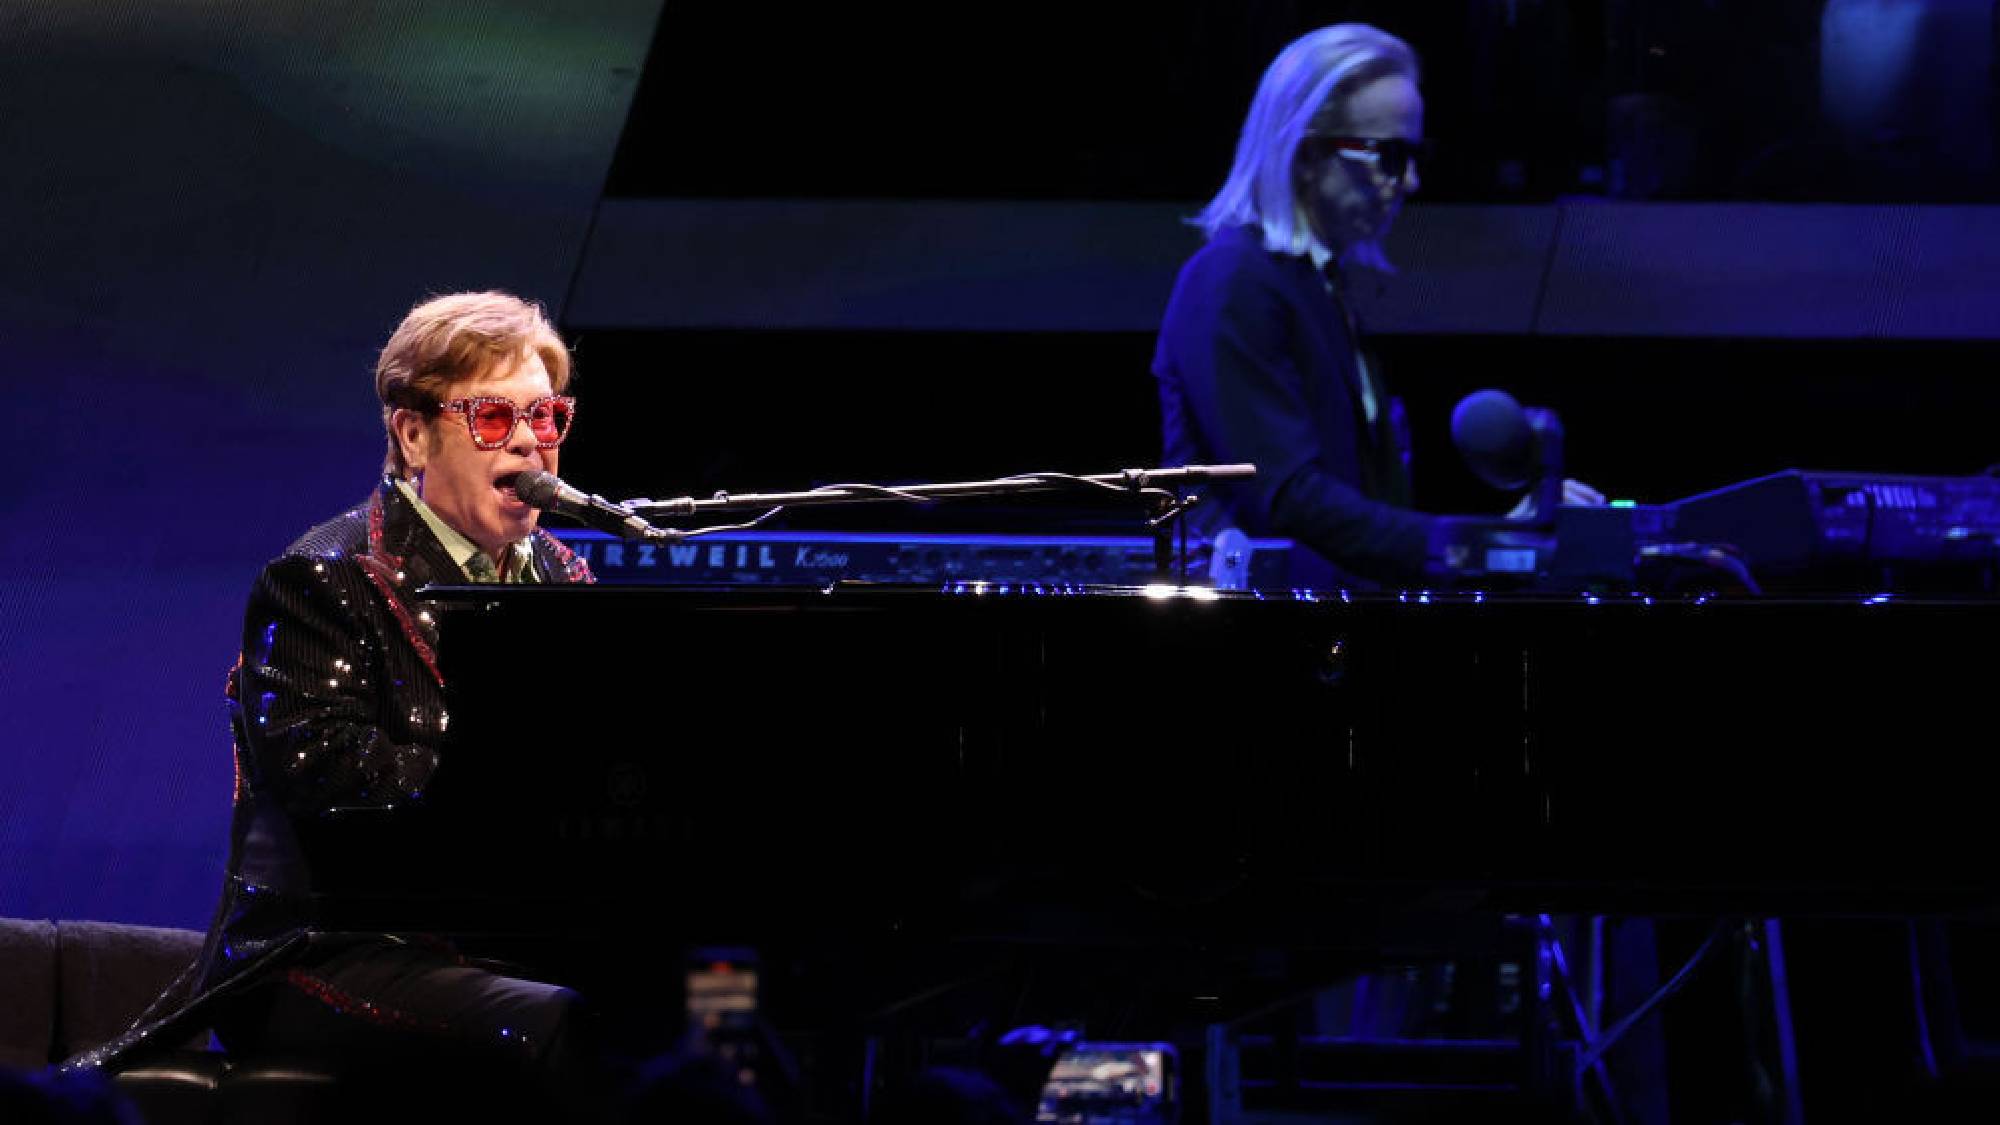 Sir Elton John actúa en directo en el escenario durante su 